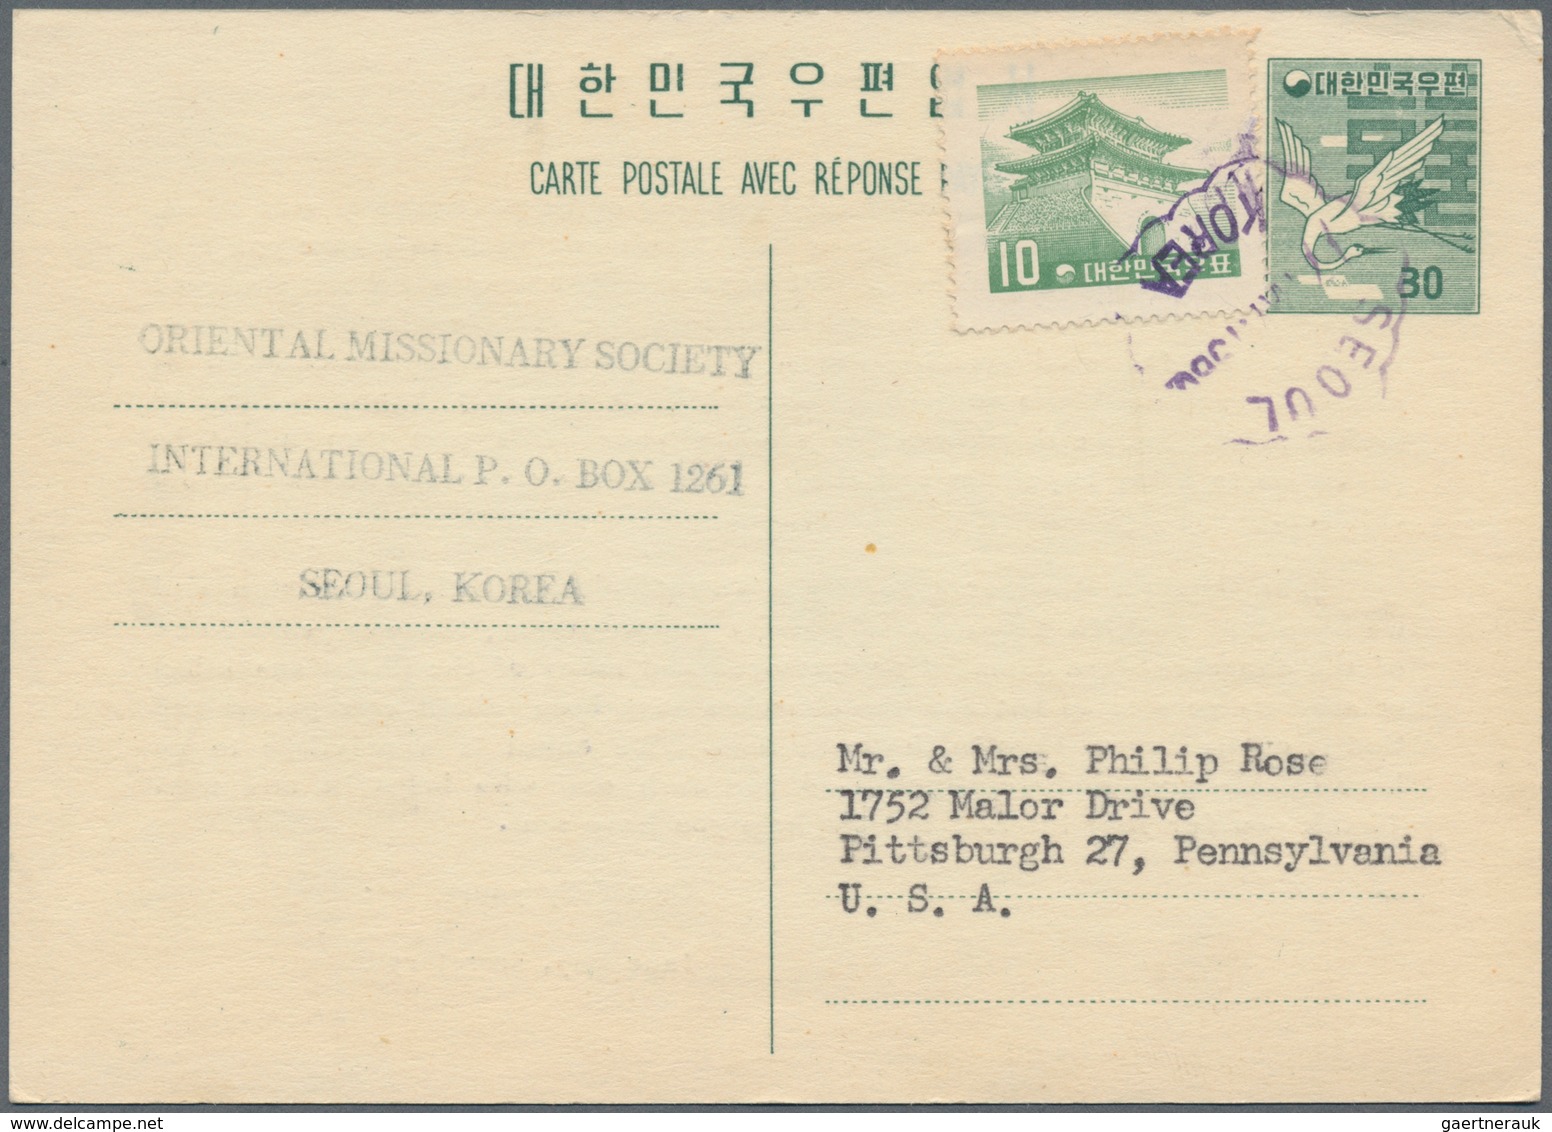 Korea-Süd: 1957, UPU 30 W. Double Card, Question Part, Uprated 10 W. Canc. "SEOUL 17 MAY 1960" To Pi - Korea (Süd-)